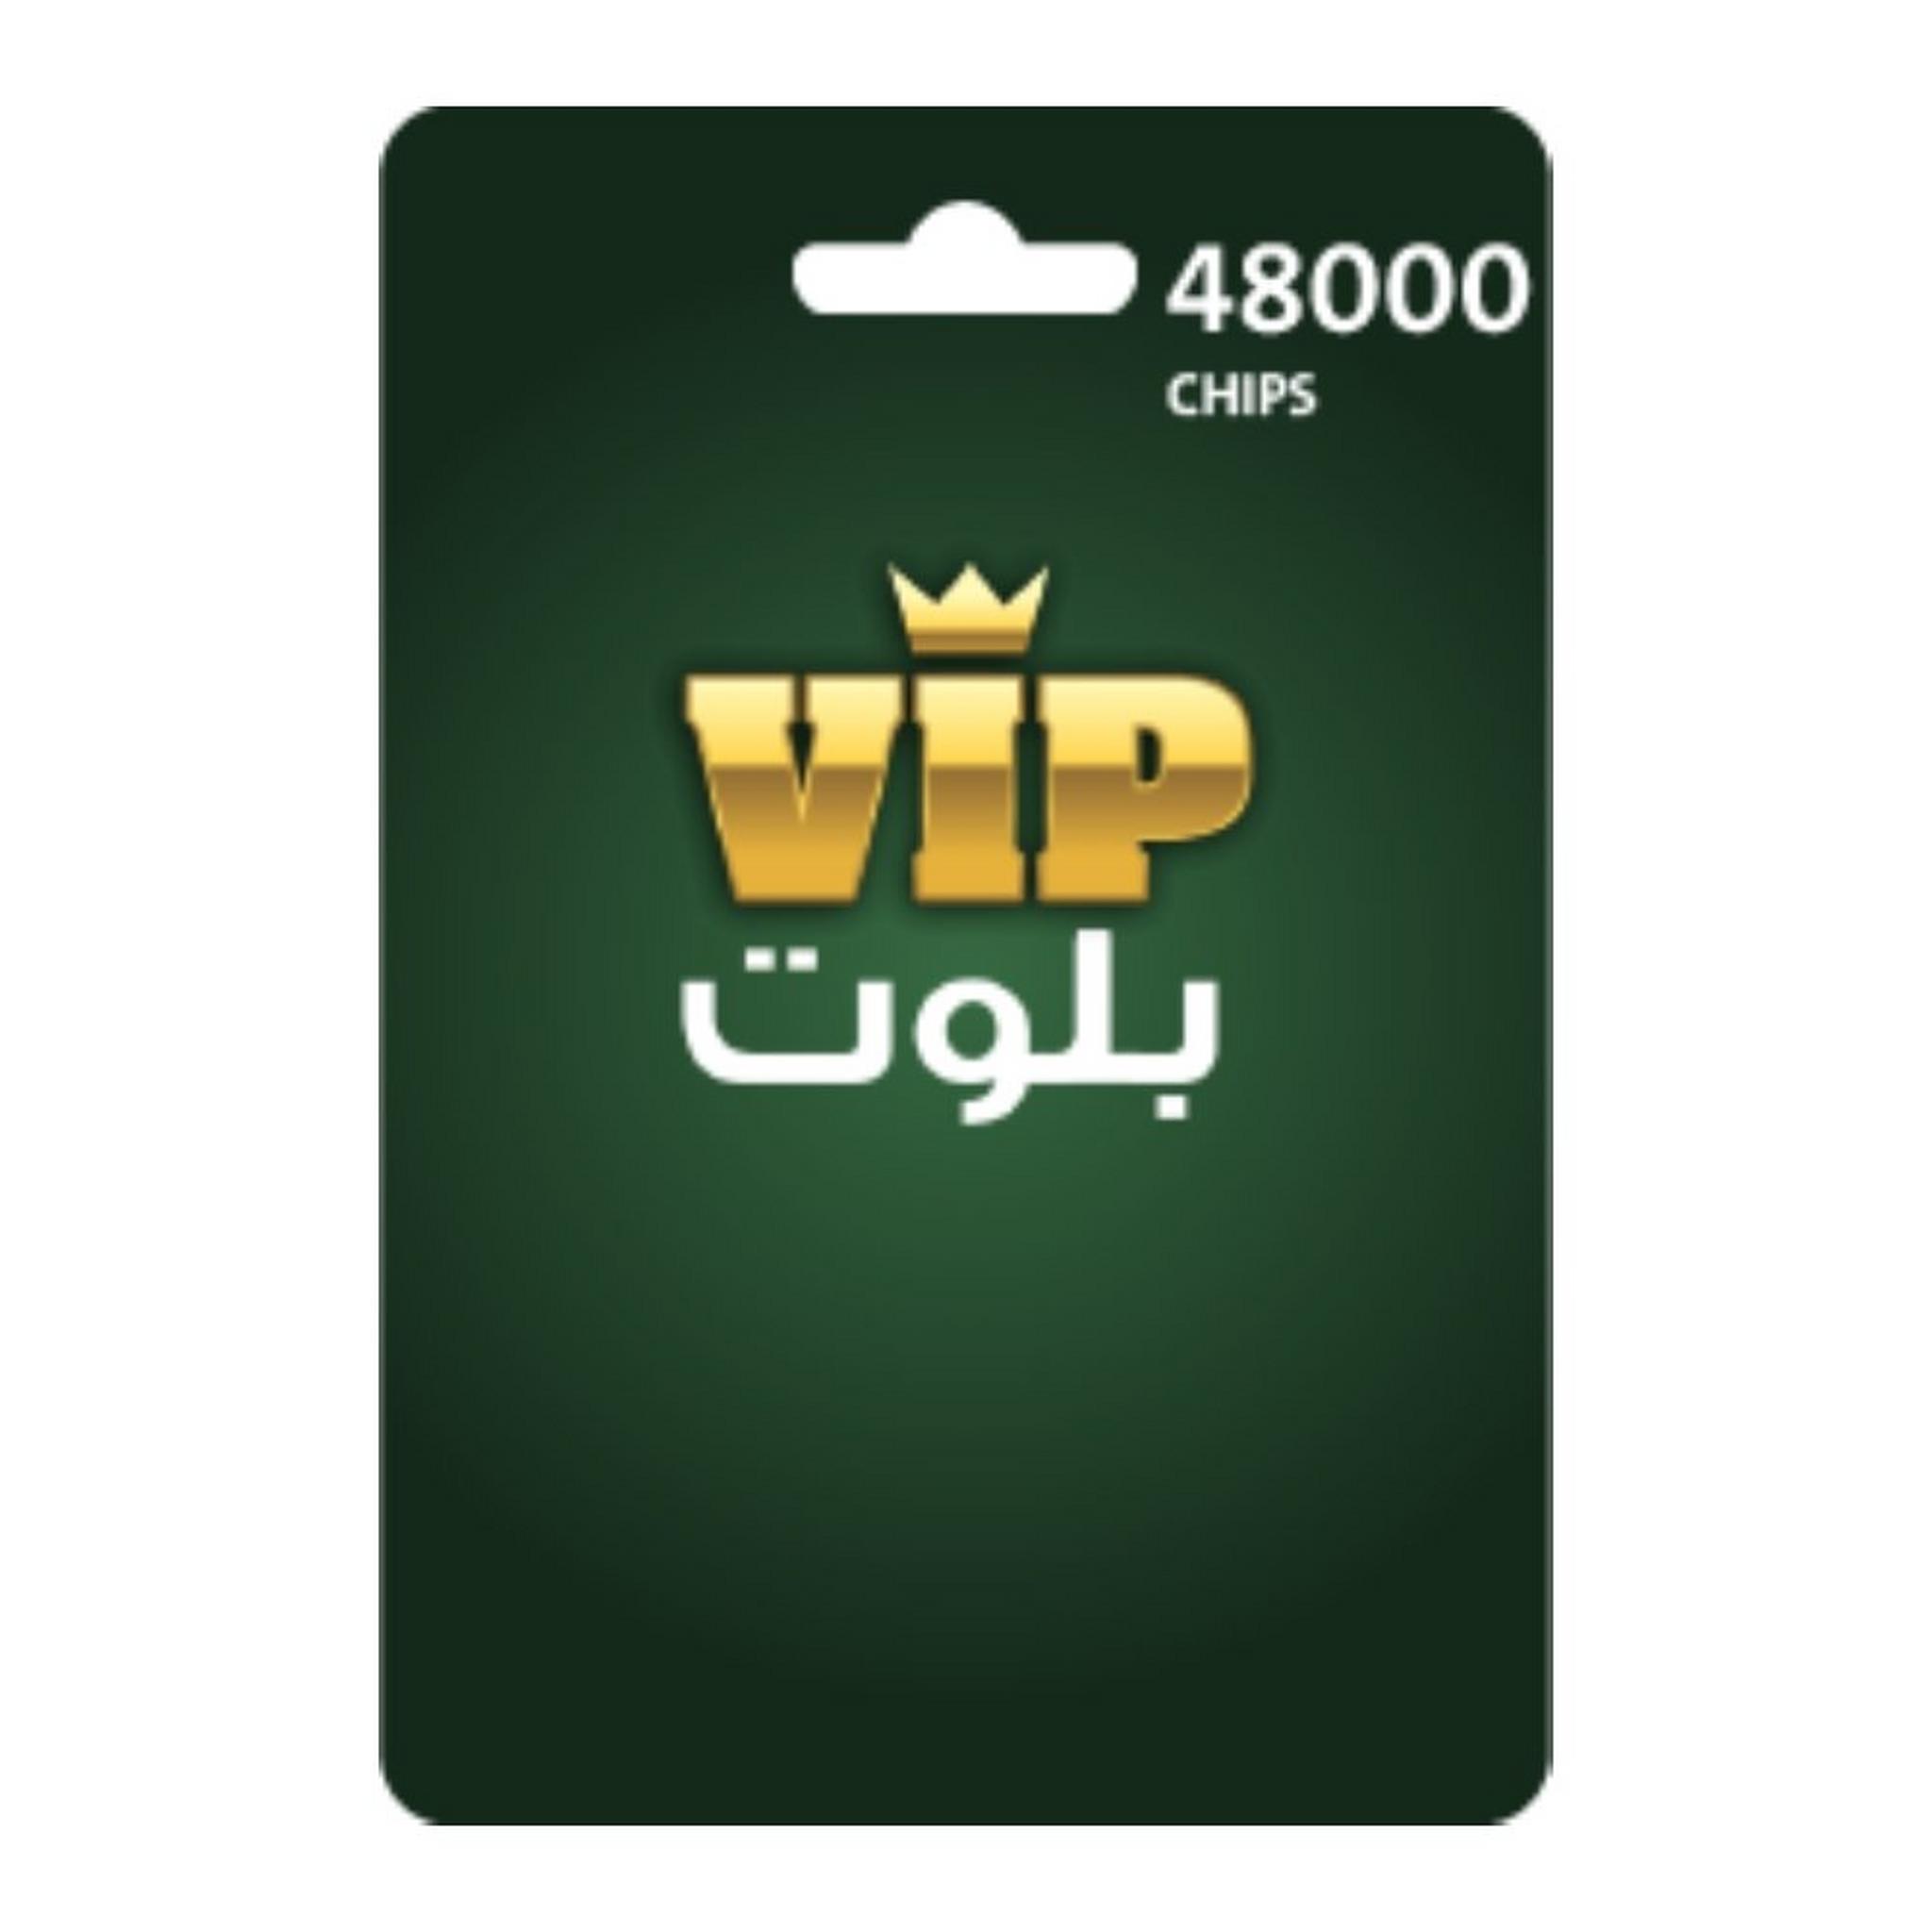 VIP Baloot Card 48000 Chips